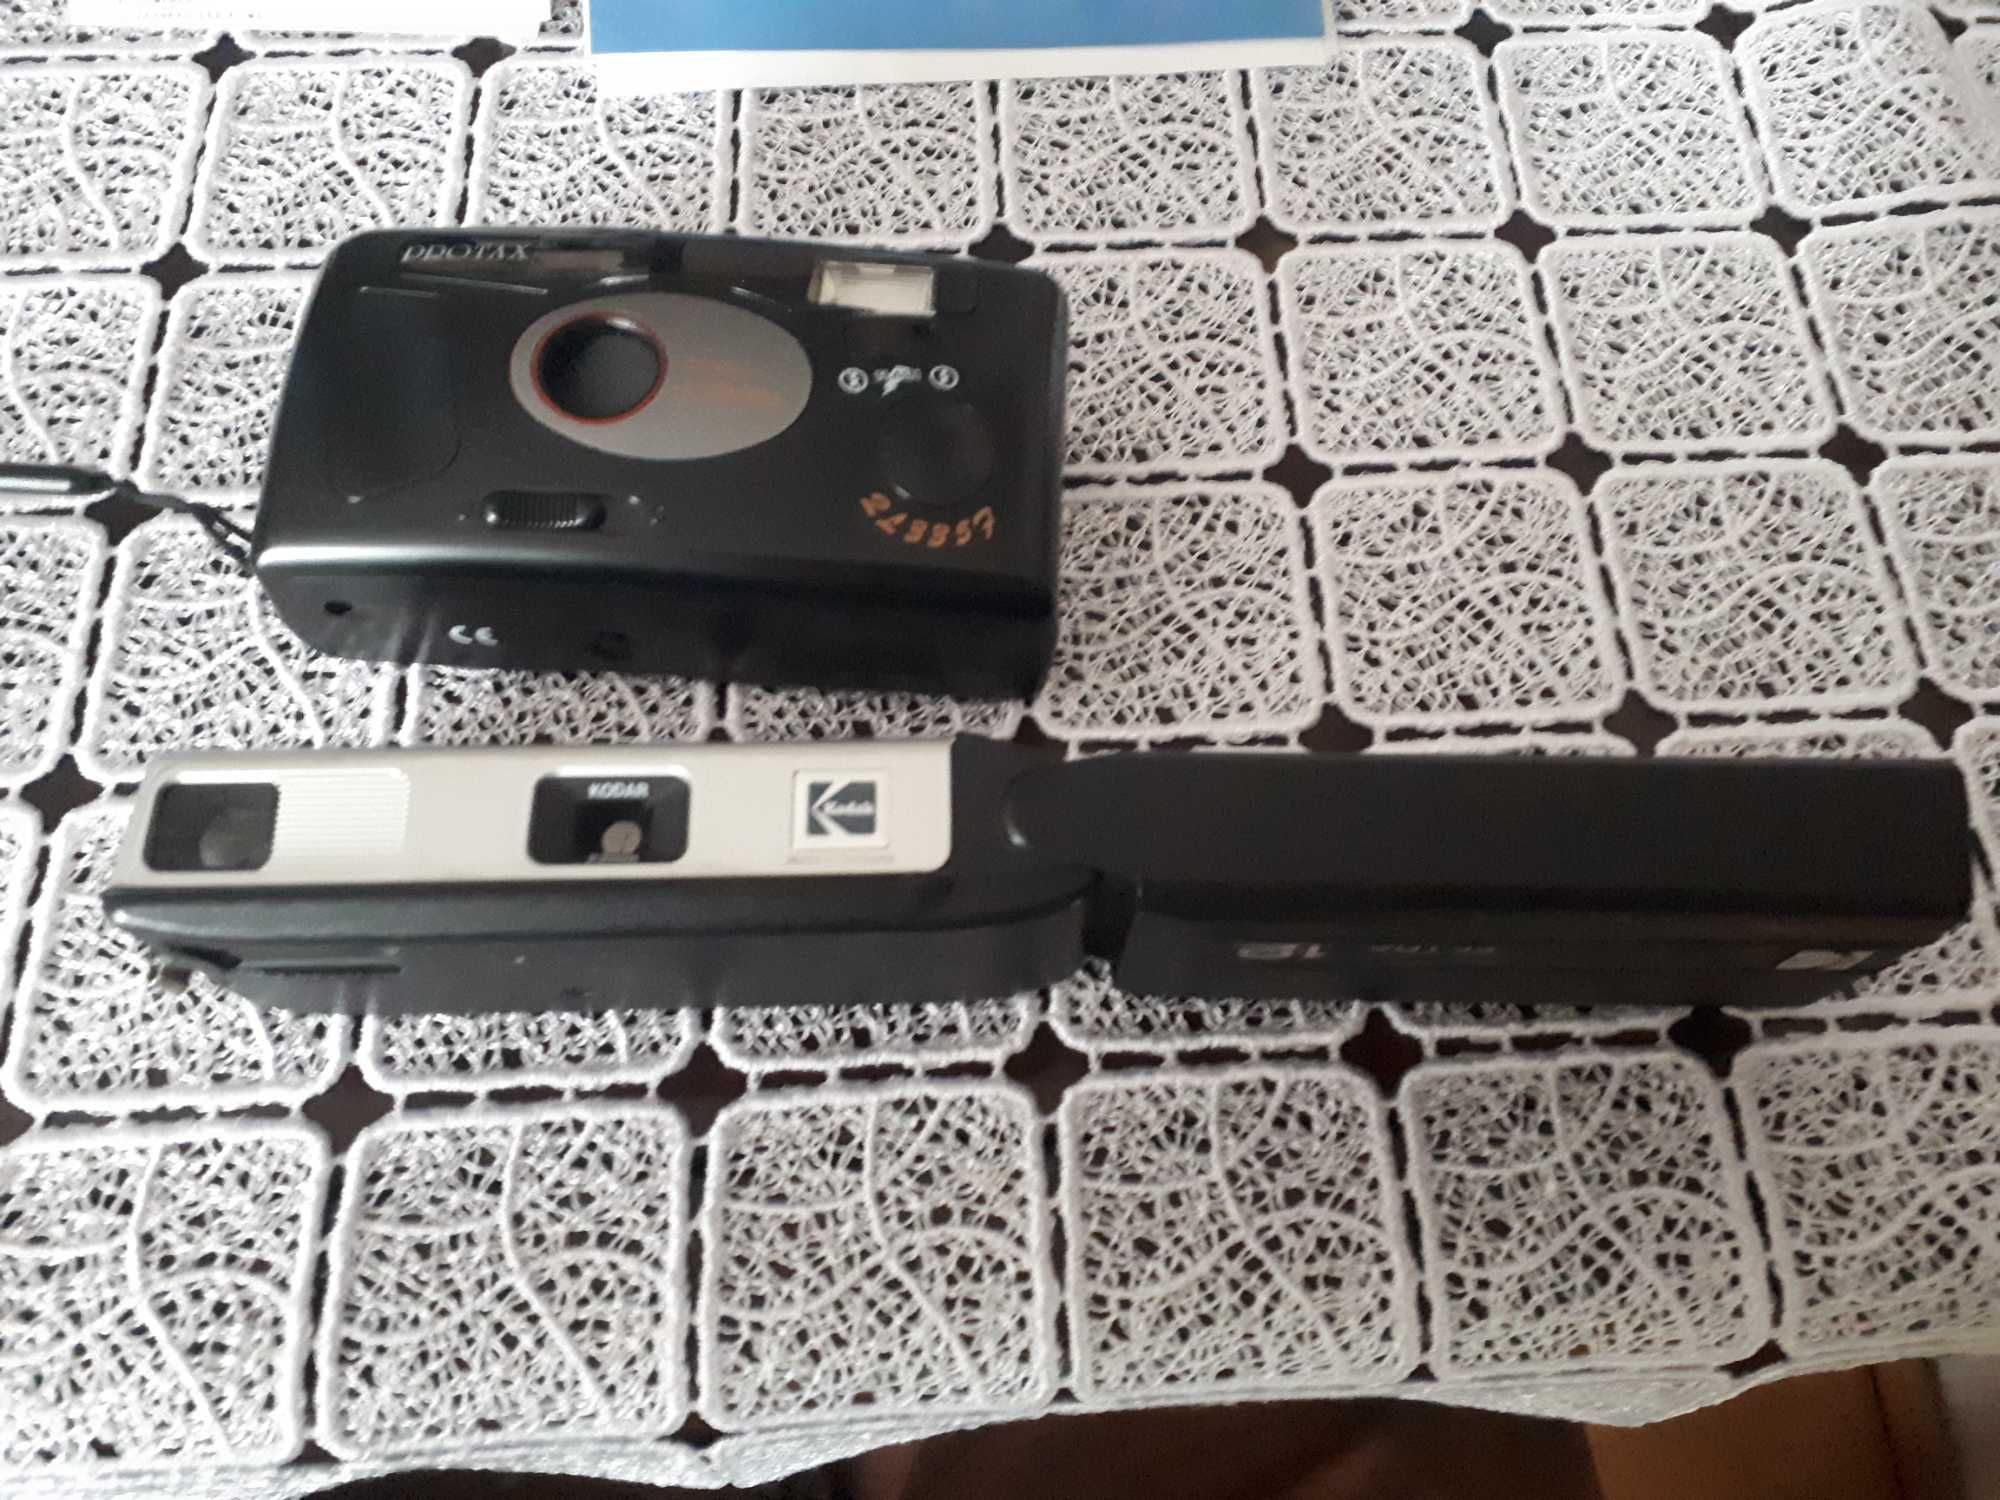 Aparaty fotograficzne Kodak, Protax, analogowe dla kolekcjonera